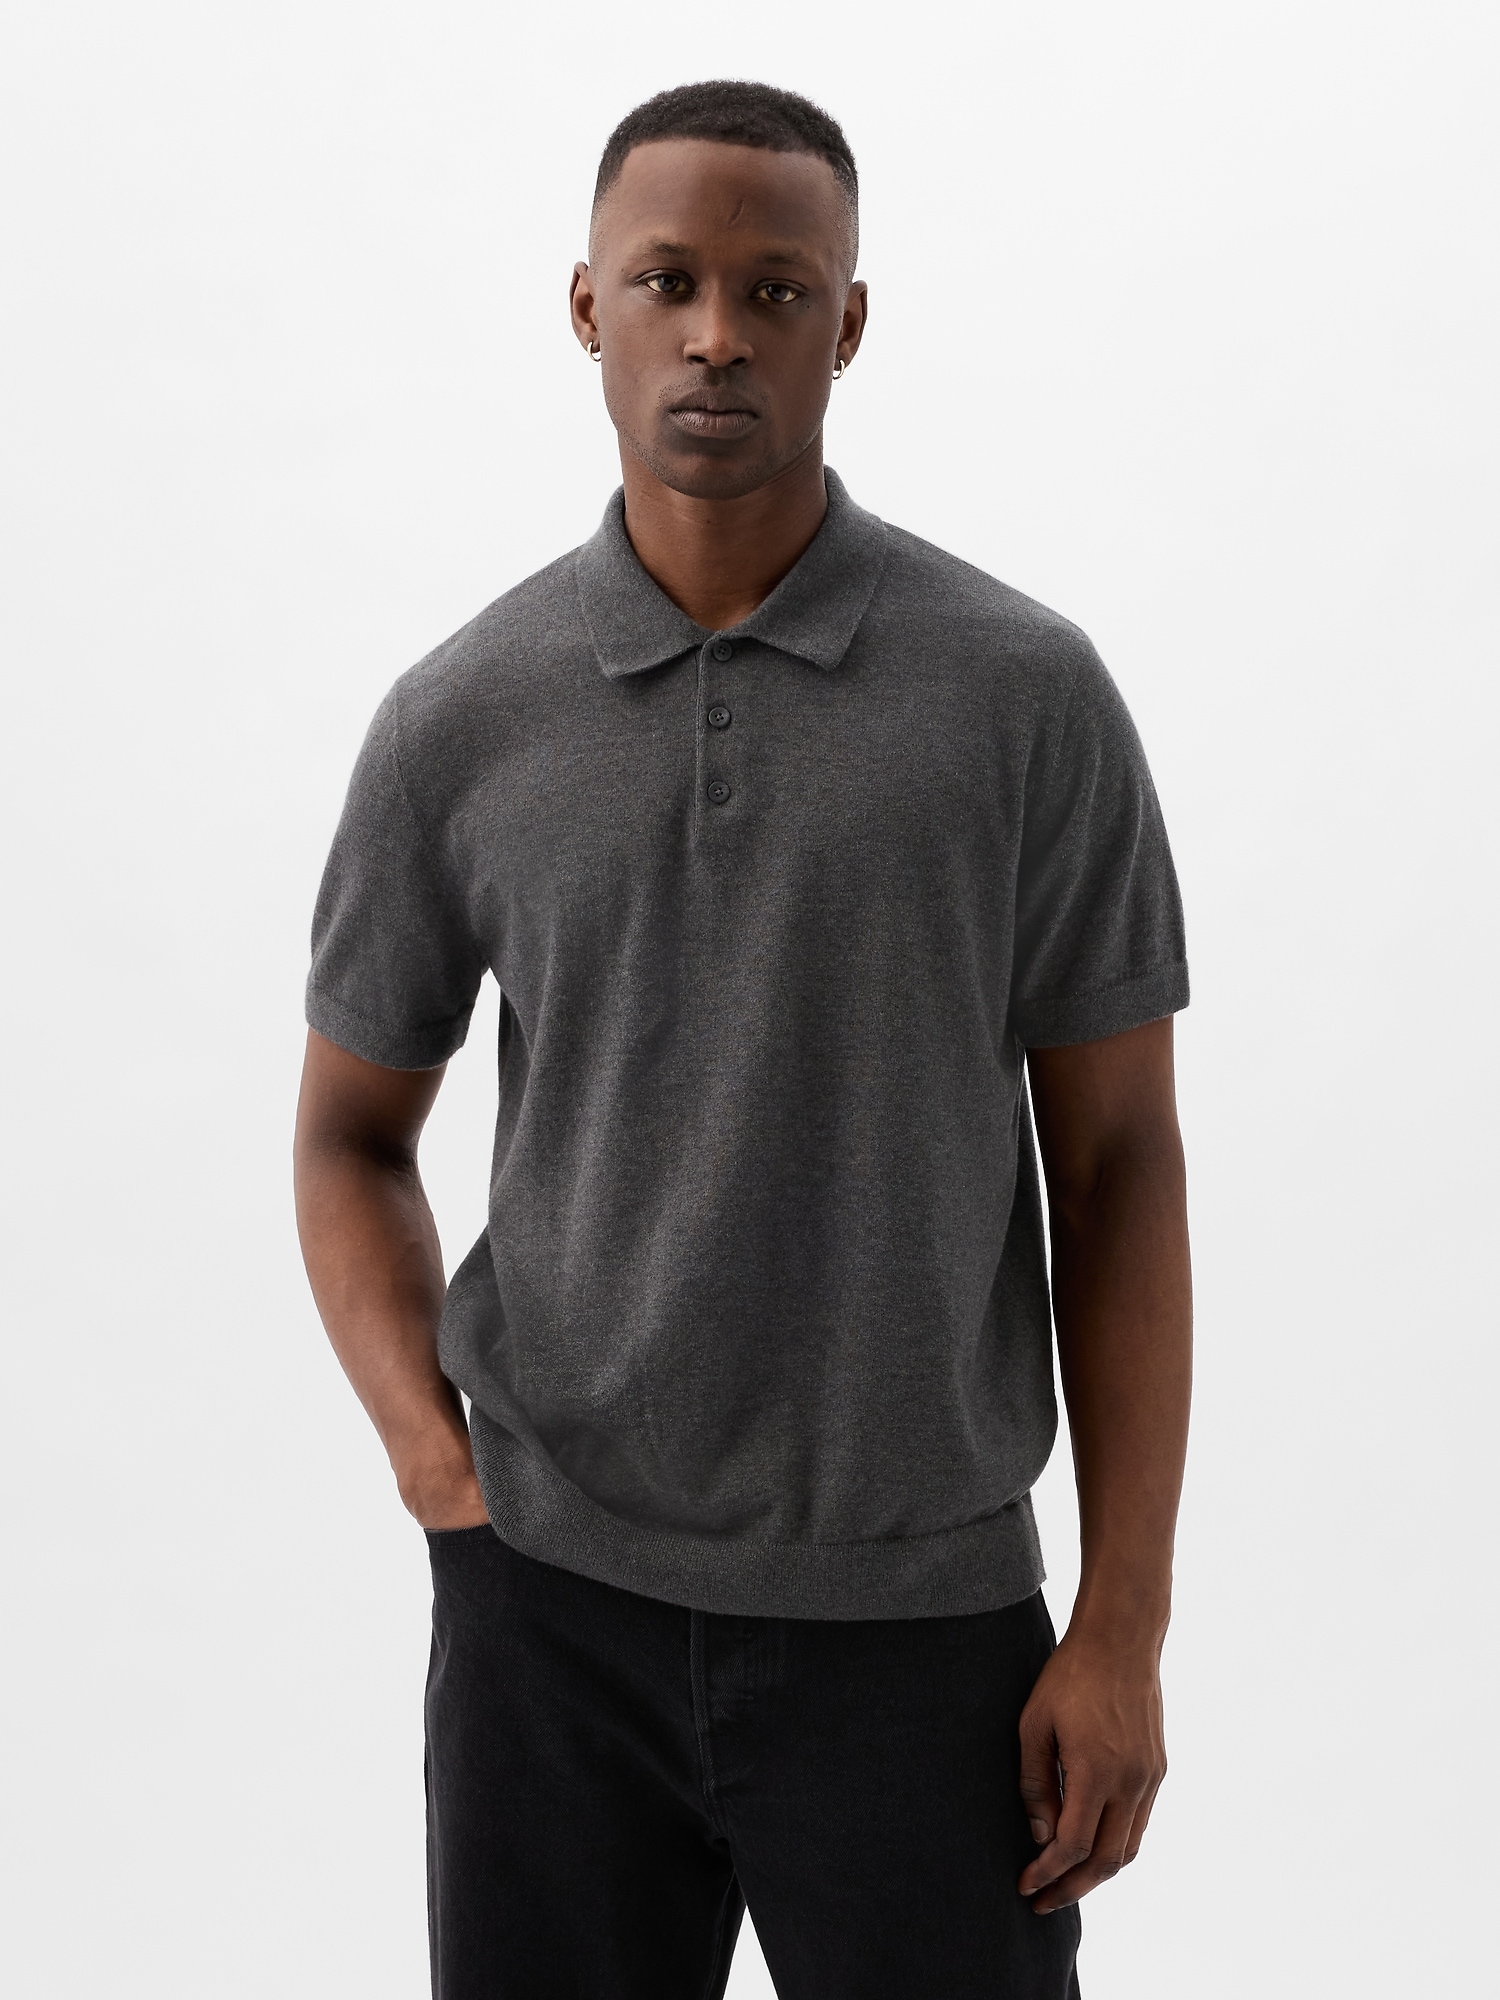 Gap Cashsoft Sweater Polo Shirt Shirt In Charcoal